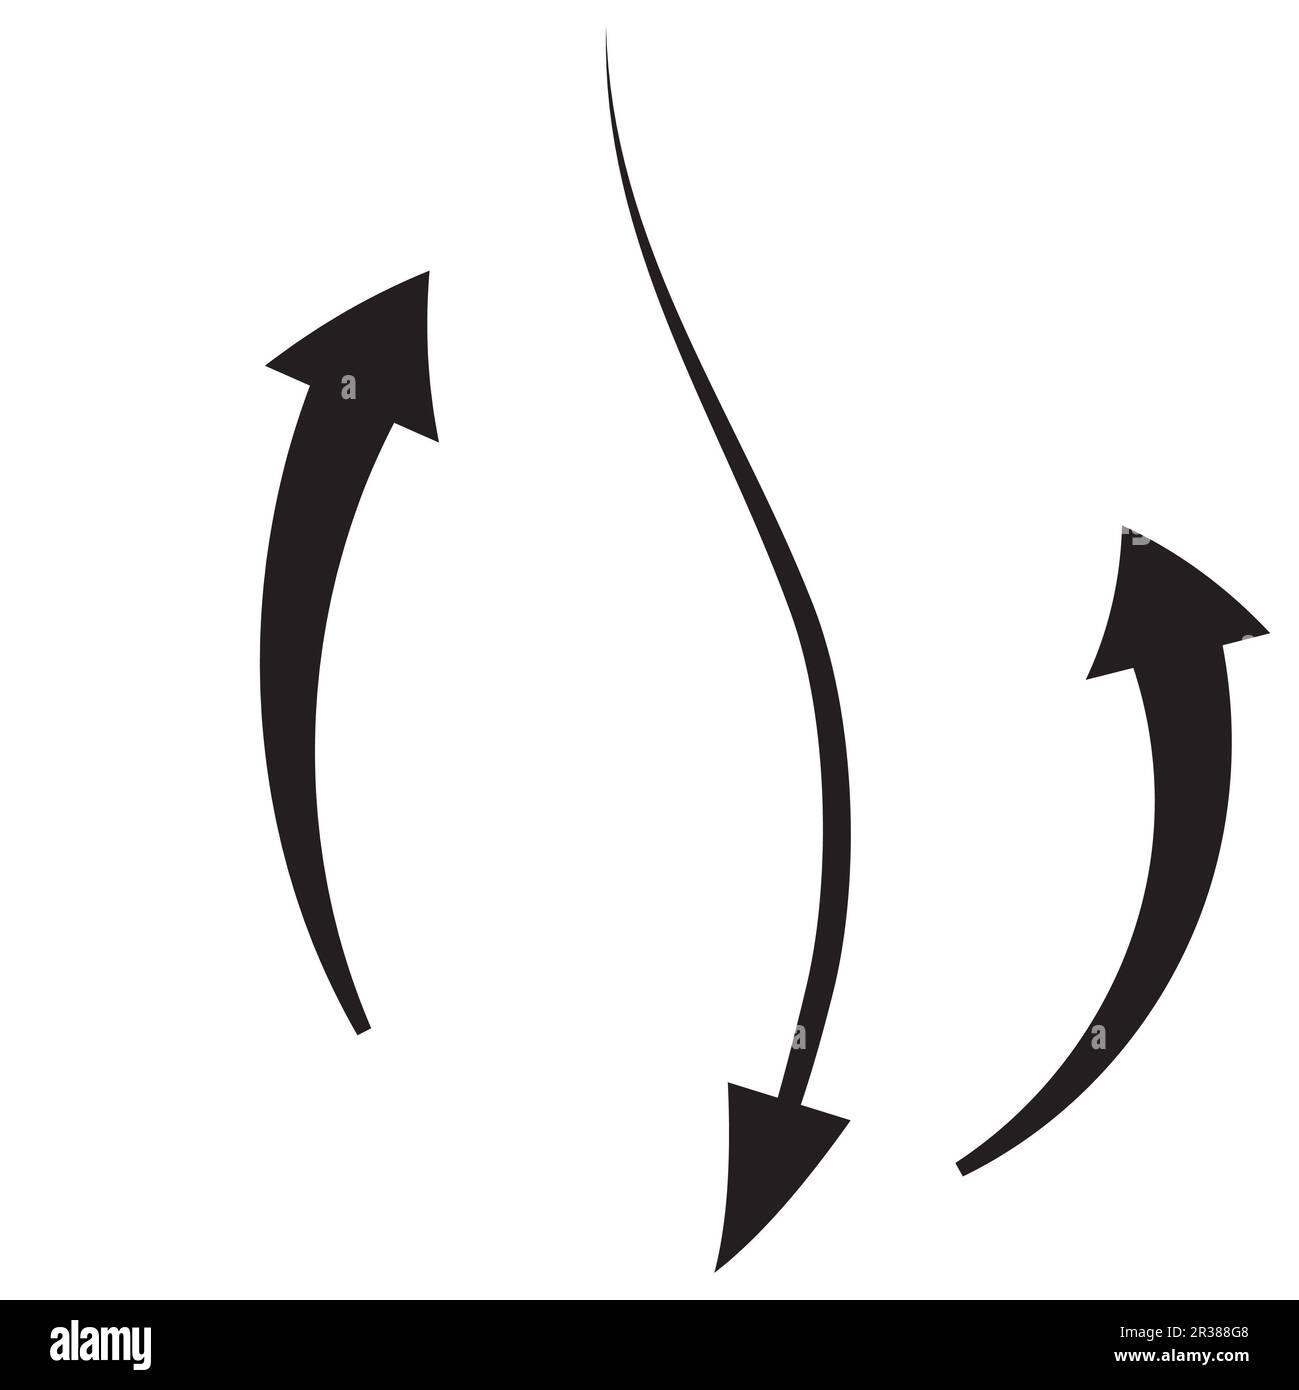 Ensemble de symboles de flèche ou contour d'esquisse de cercle, courbe, glissement vers le haut, ligne noire, icône de flèche plate éléments dessinés à la main pour la conception graphique illustrati Banque D'Images